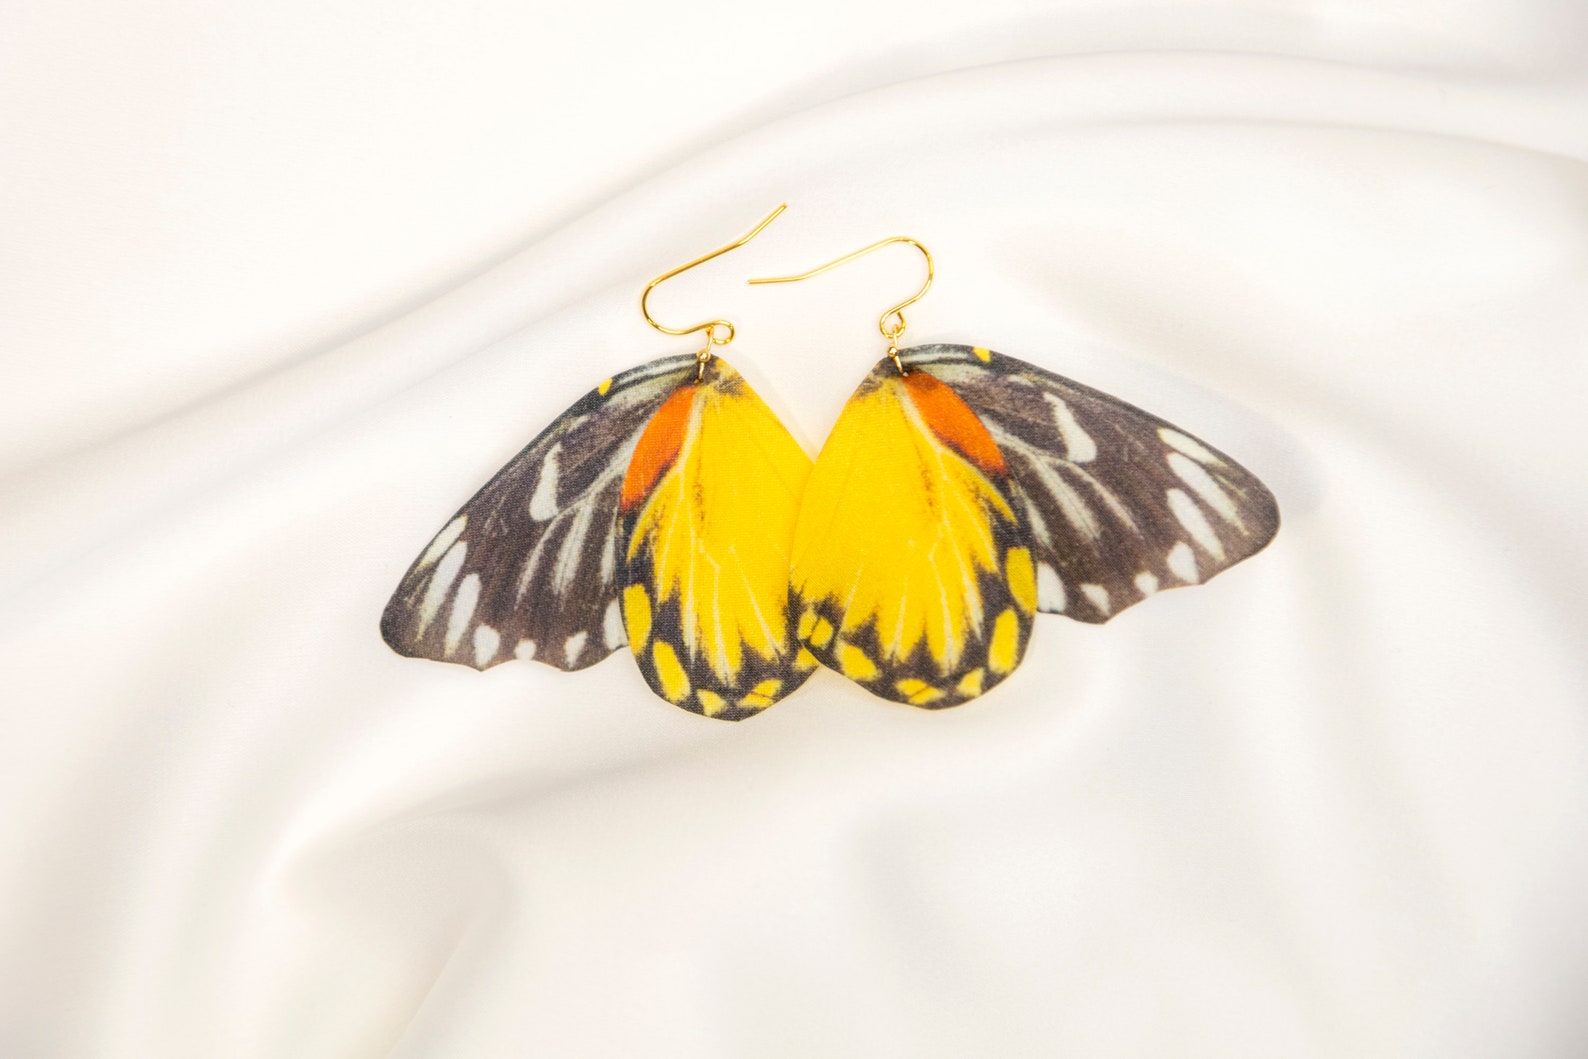 Fairy Earrings with Boho Butterfly Wings design